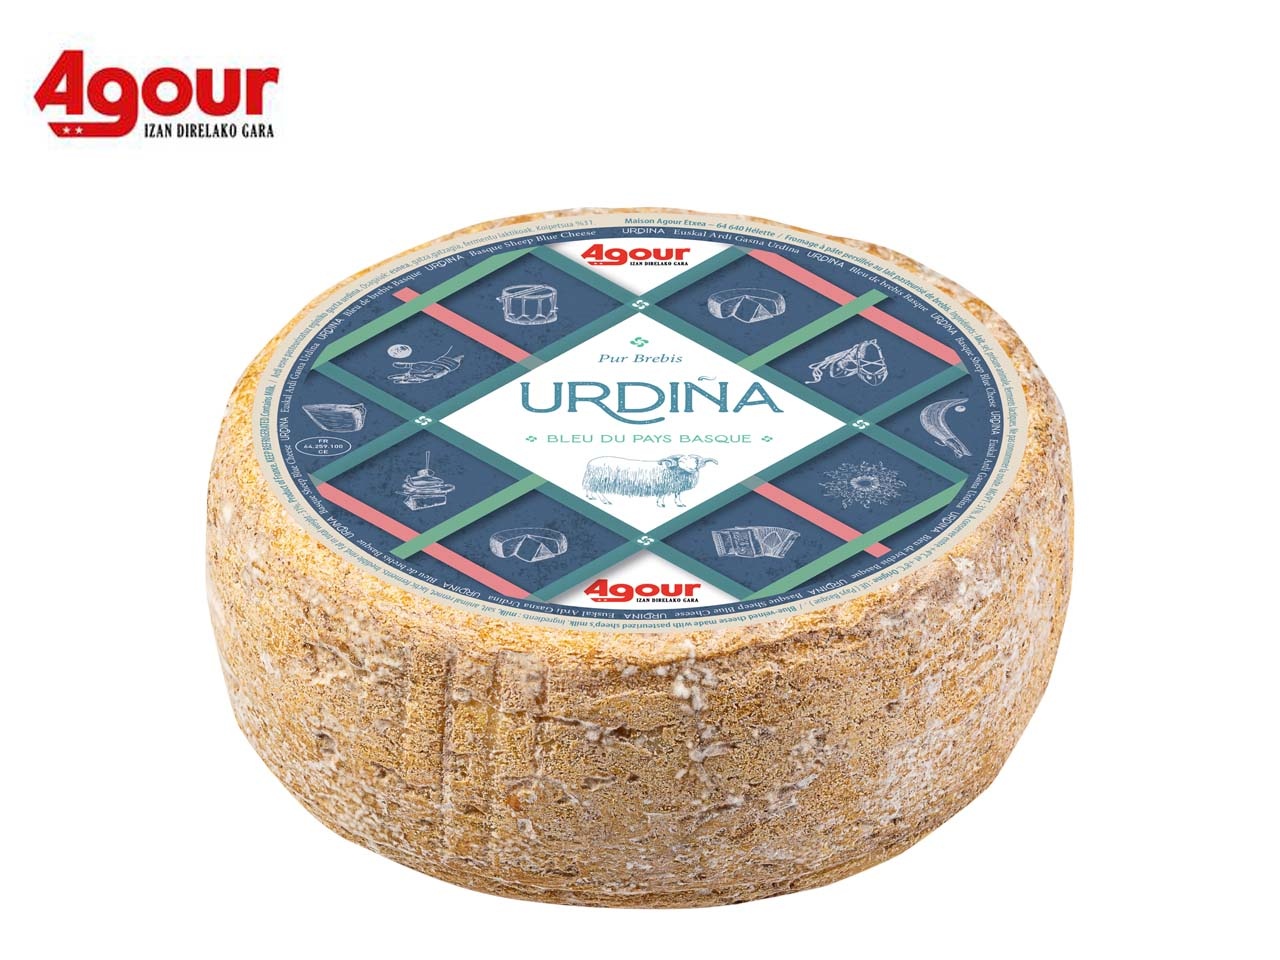 La maison Agour dévoile Urdina, son fromage crémeux à pâte persillée du pays basque